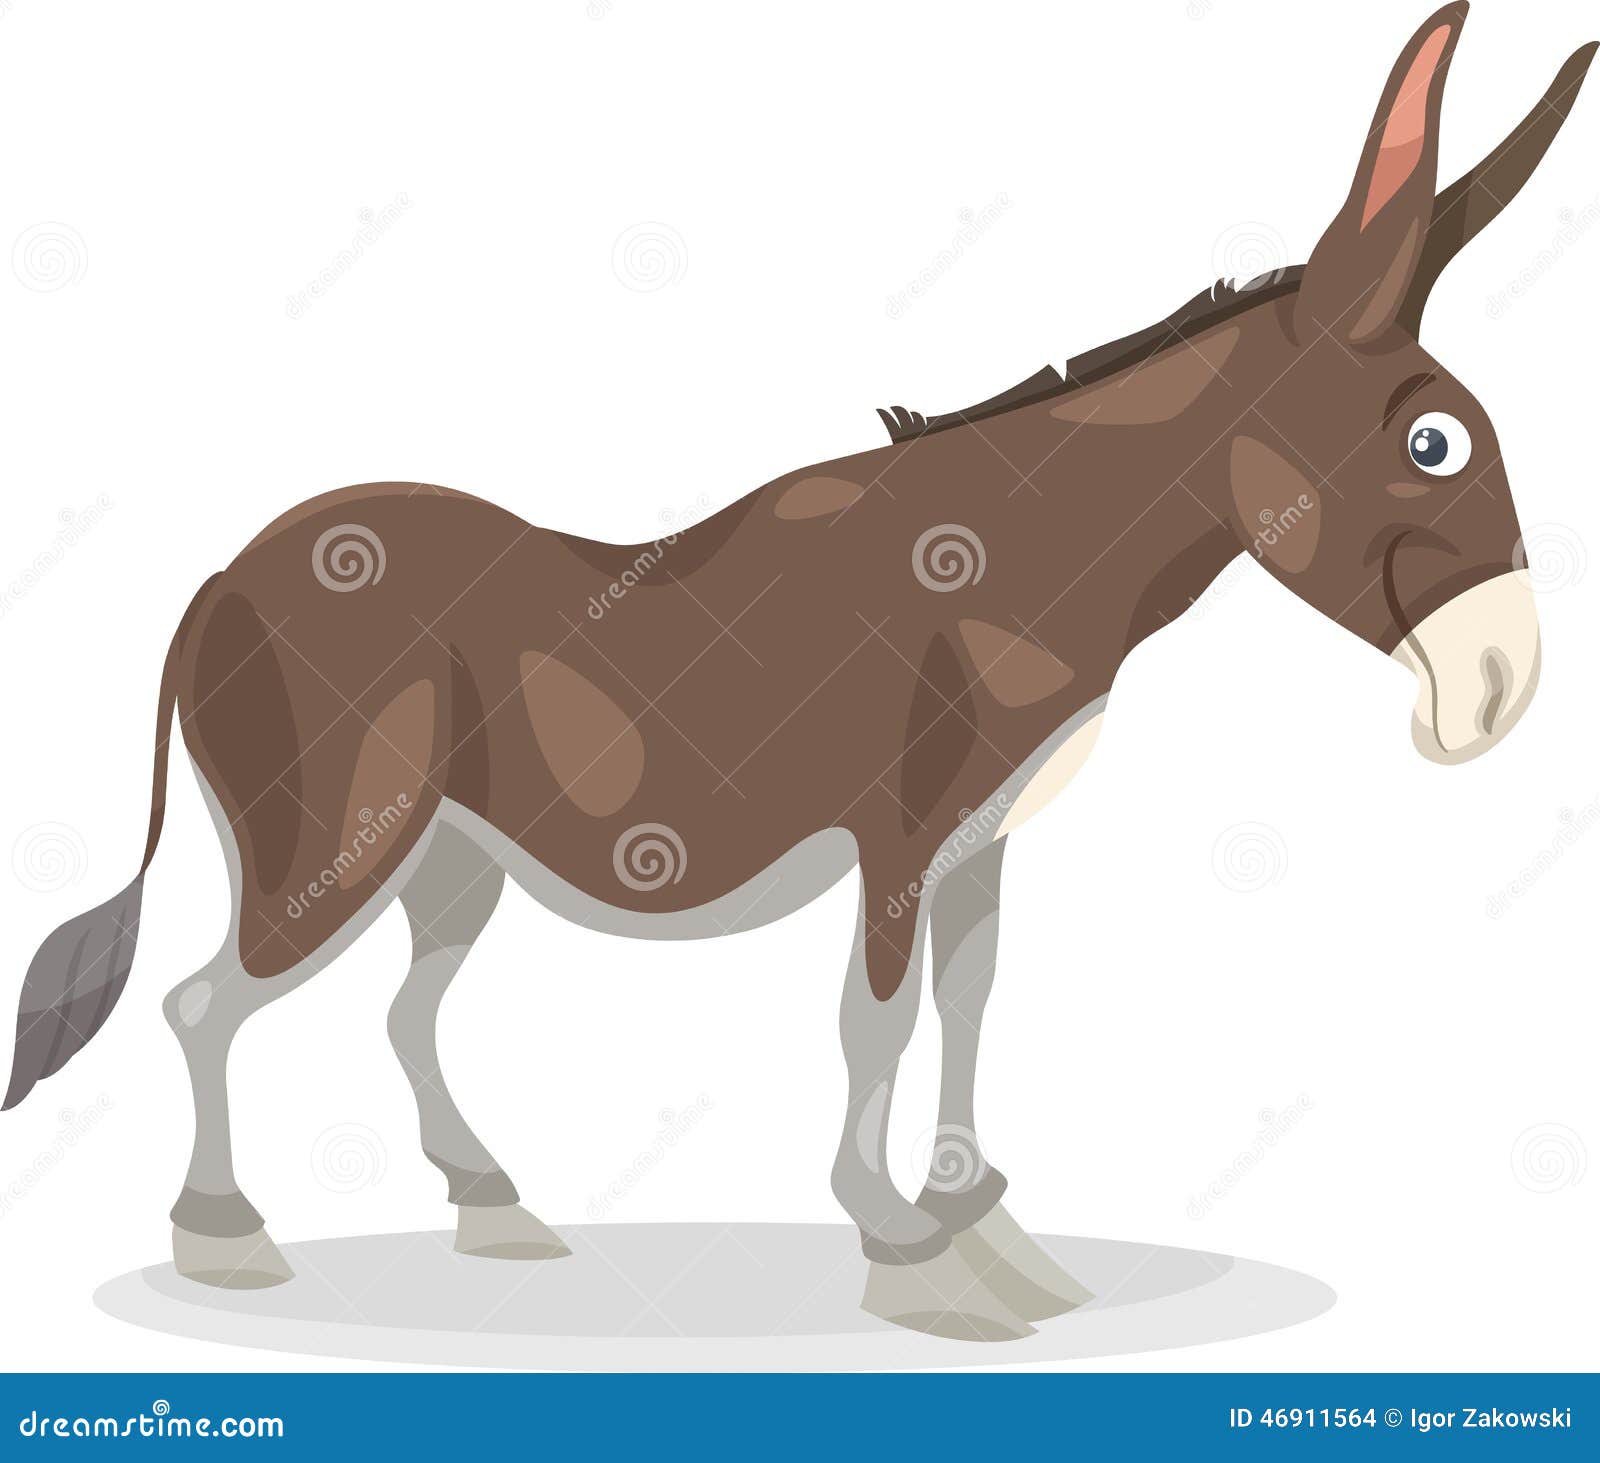 Funny Donkey illustration